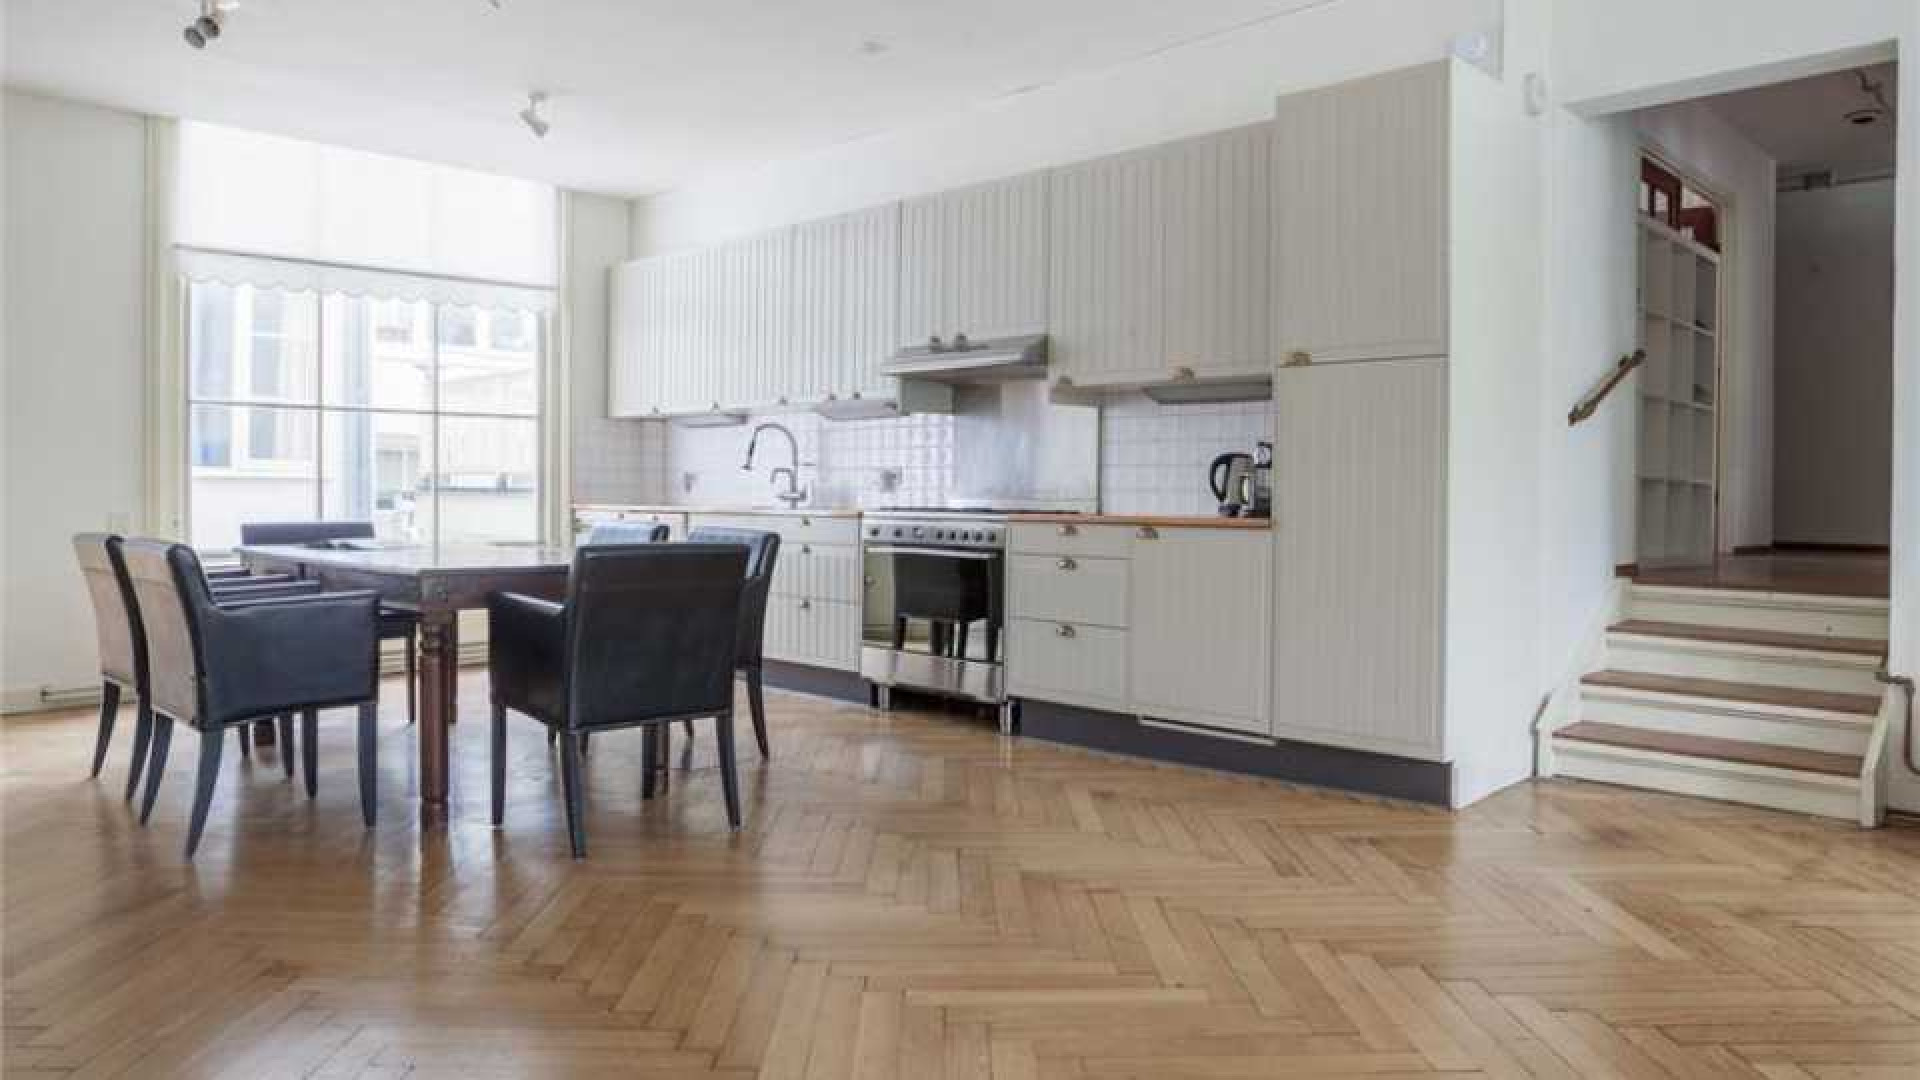 Robine van der Meer koopt prachtig appartement aan de Singel in Amsterdam. Zie foto's